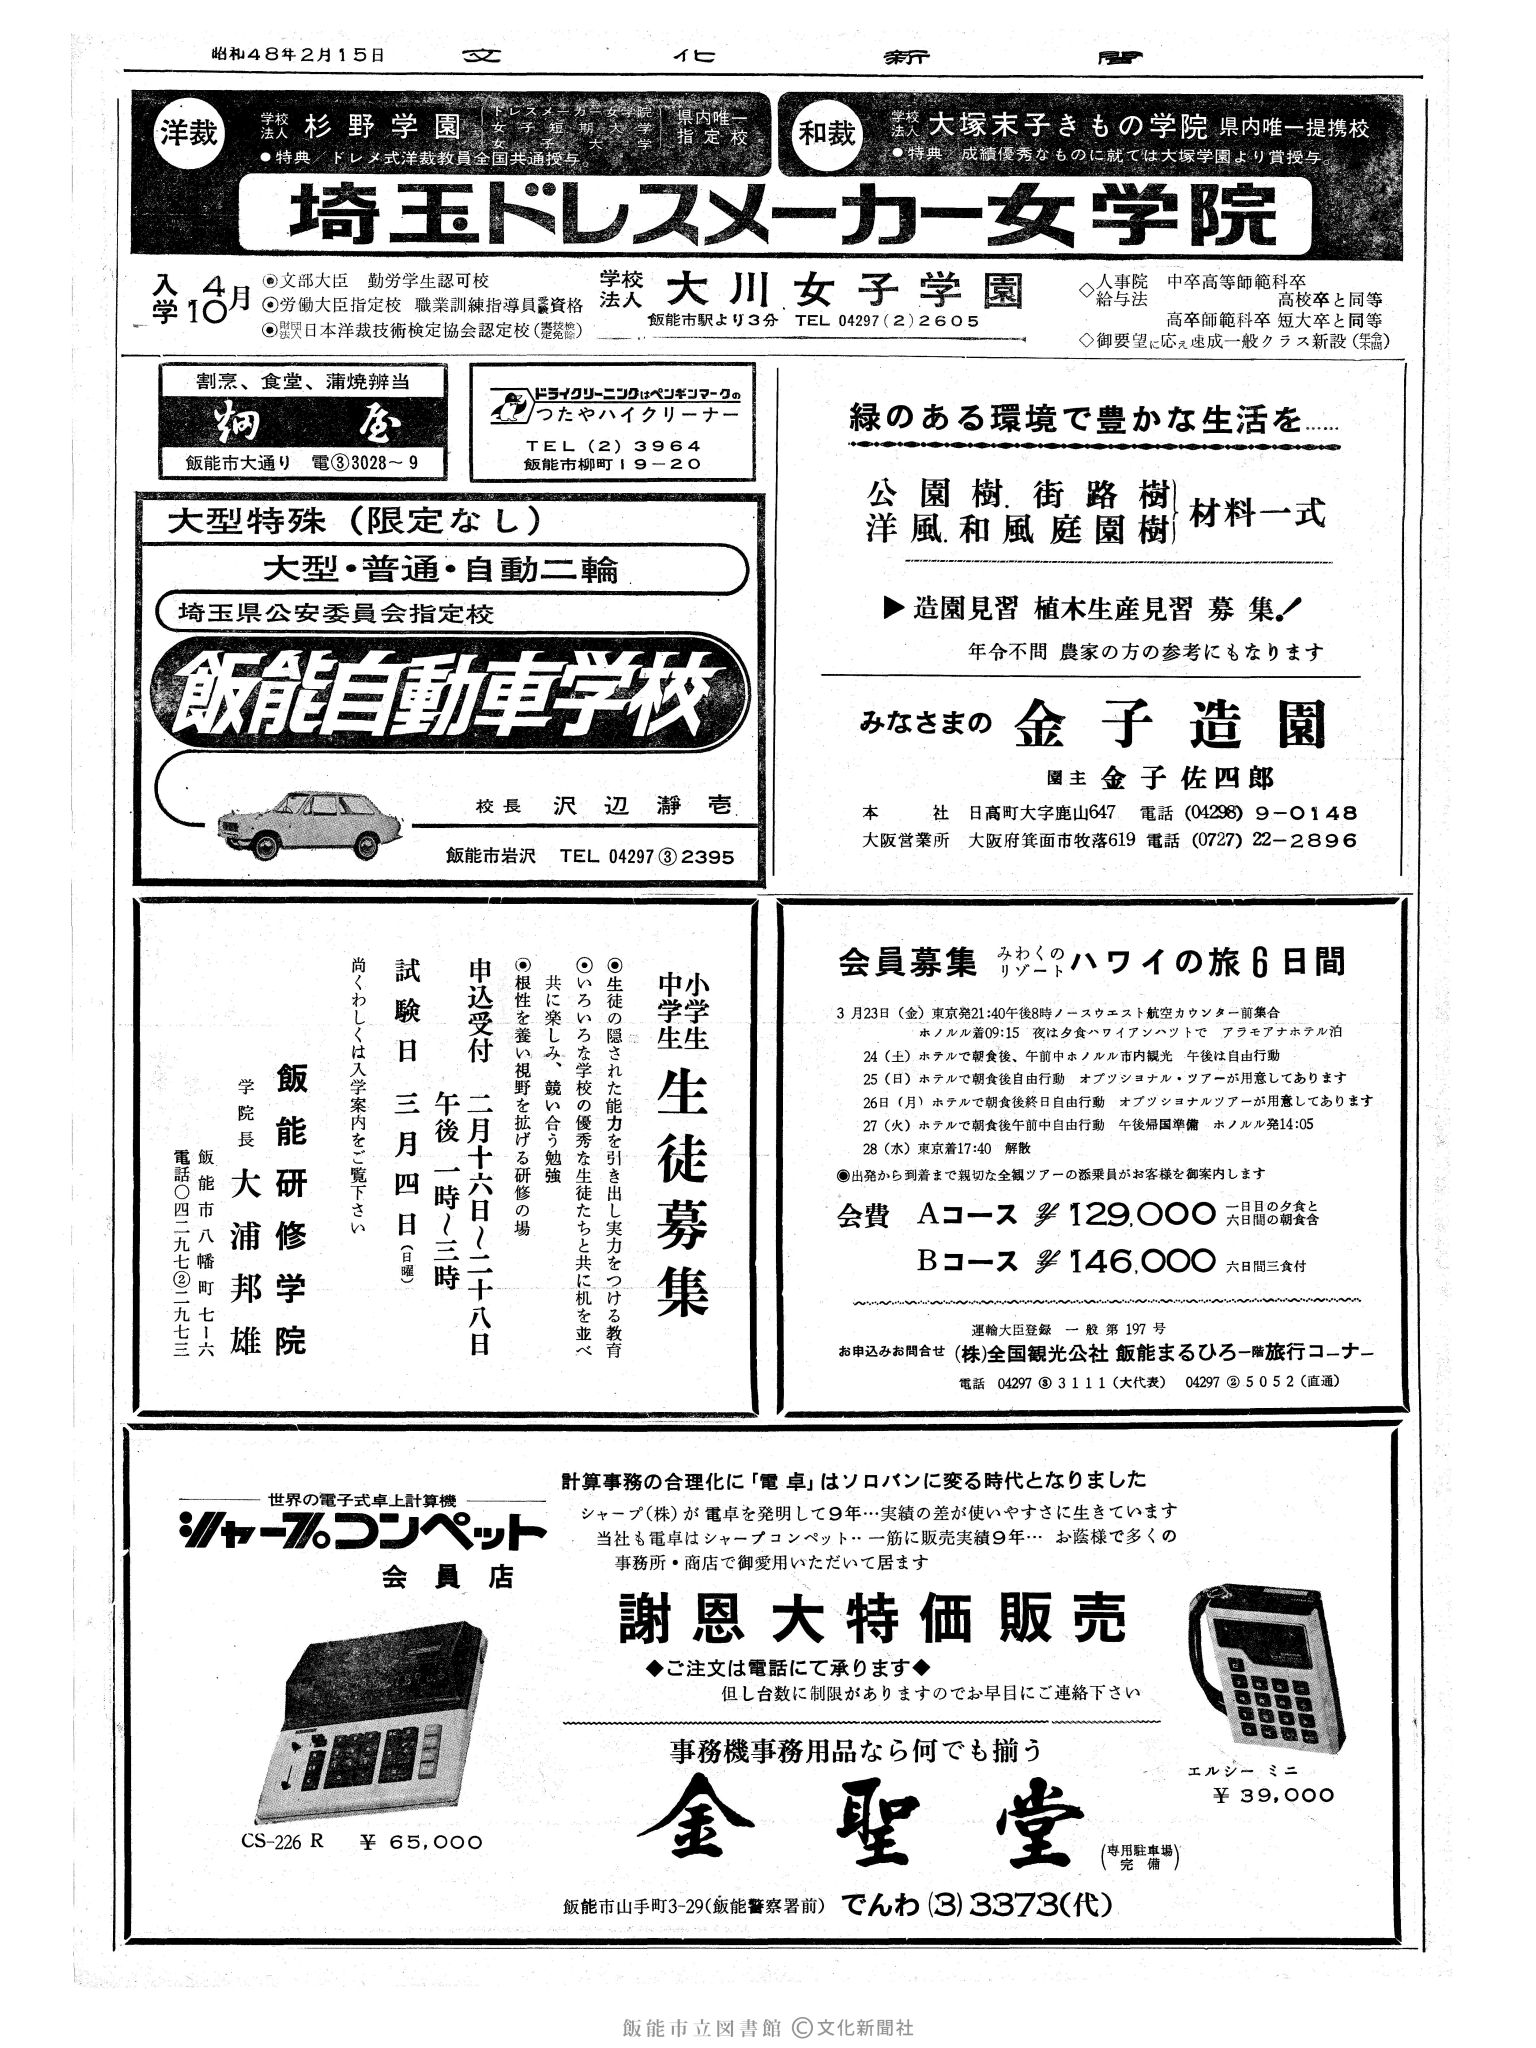 昭和48年2月15日2面 (第7458号) 広告ページ